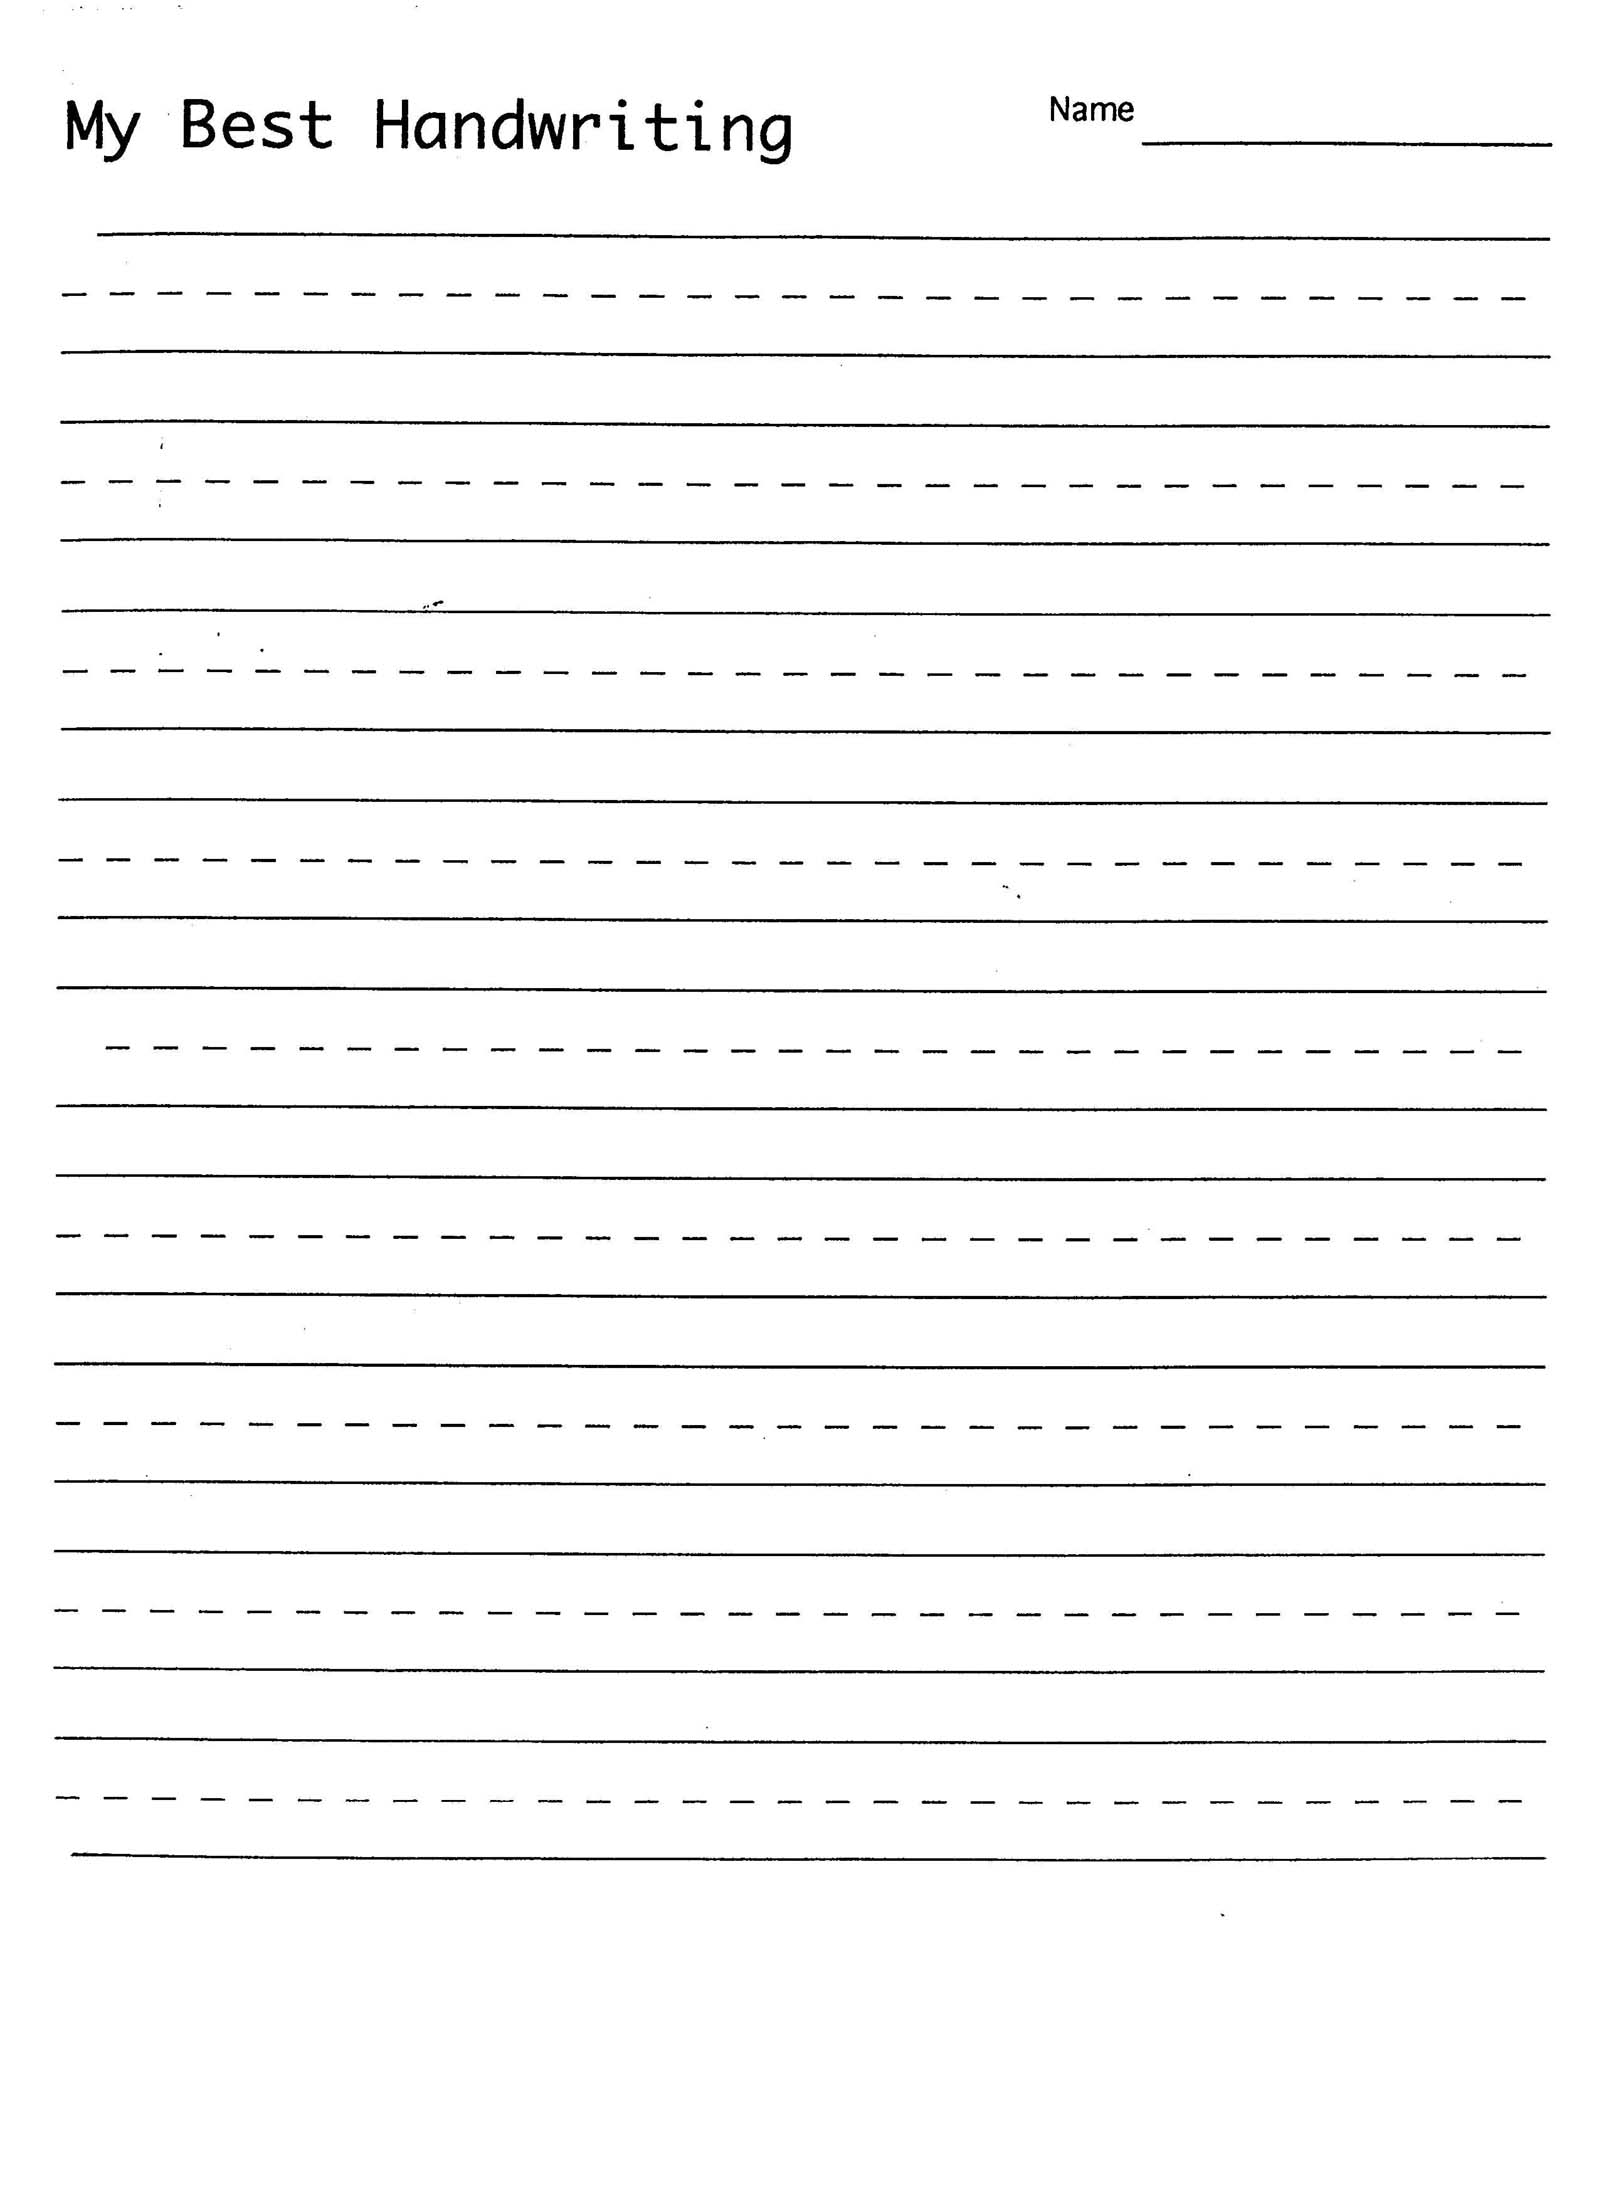 6 Best Images Of Free Printable Blank Handwriting Practice Sheet 